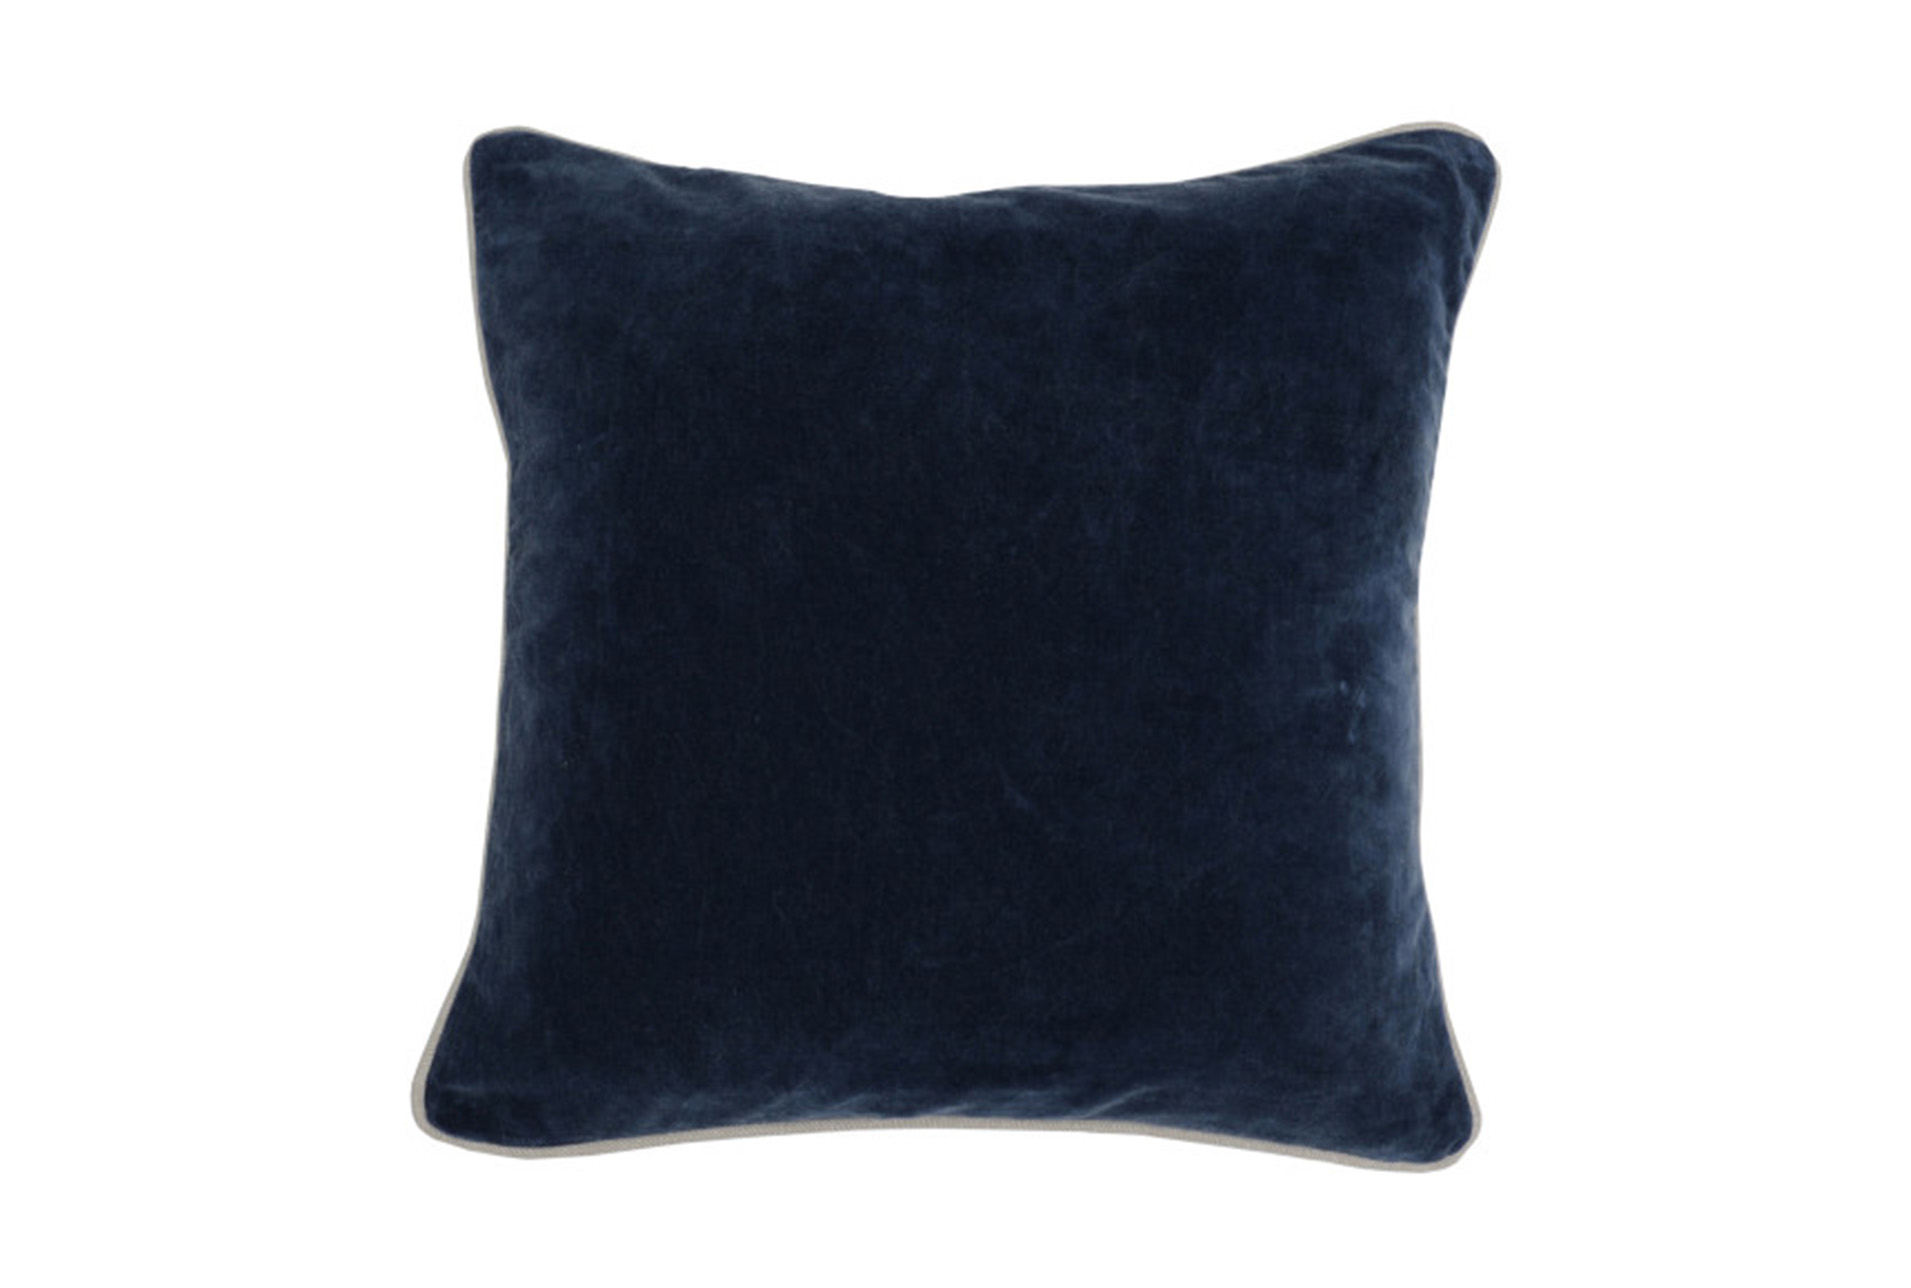 navy blue accent pillows